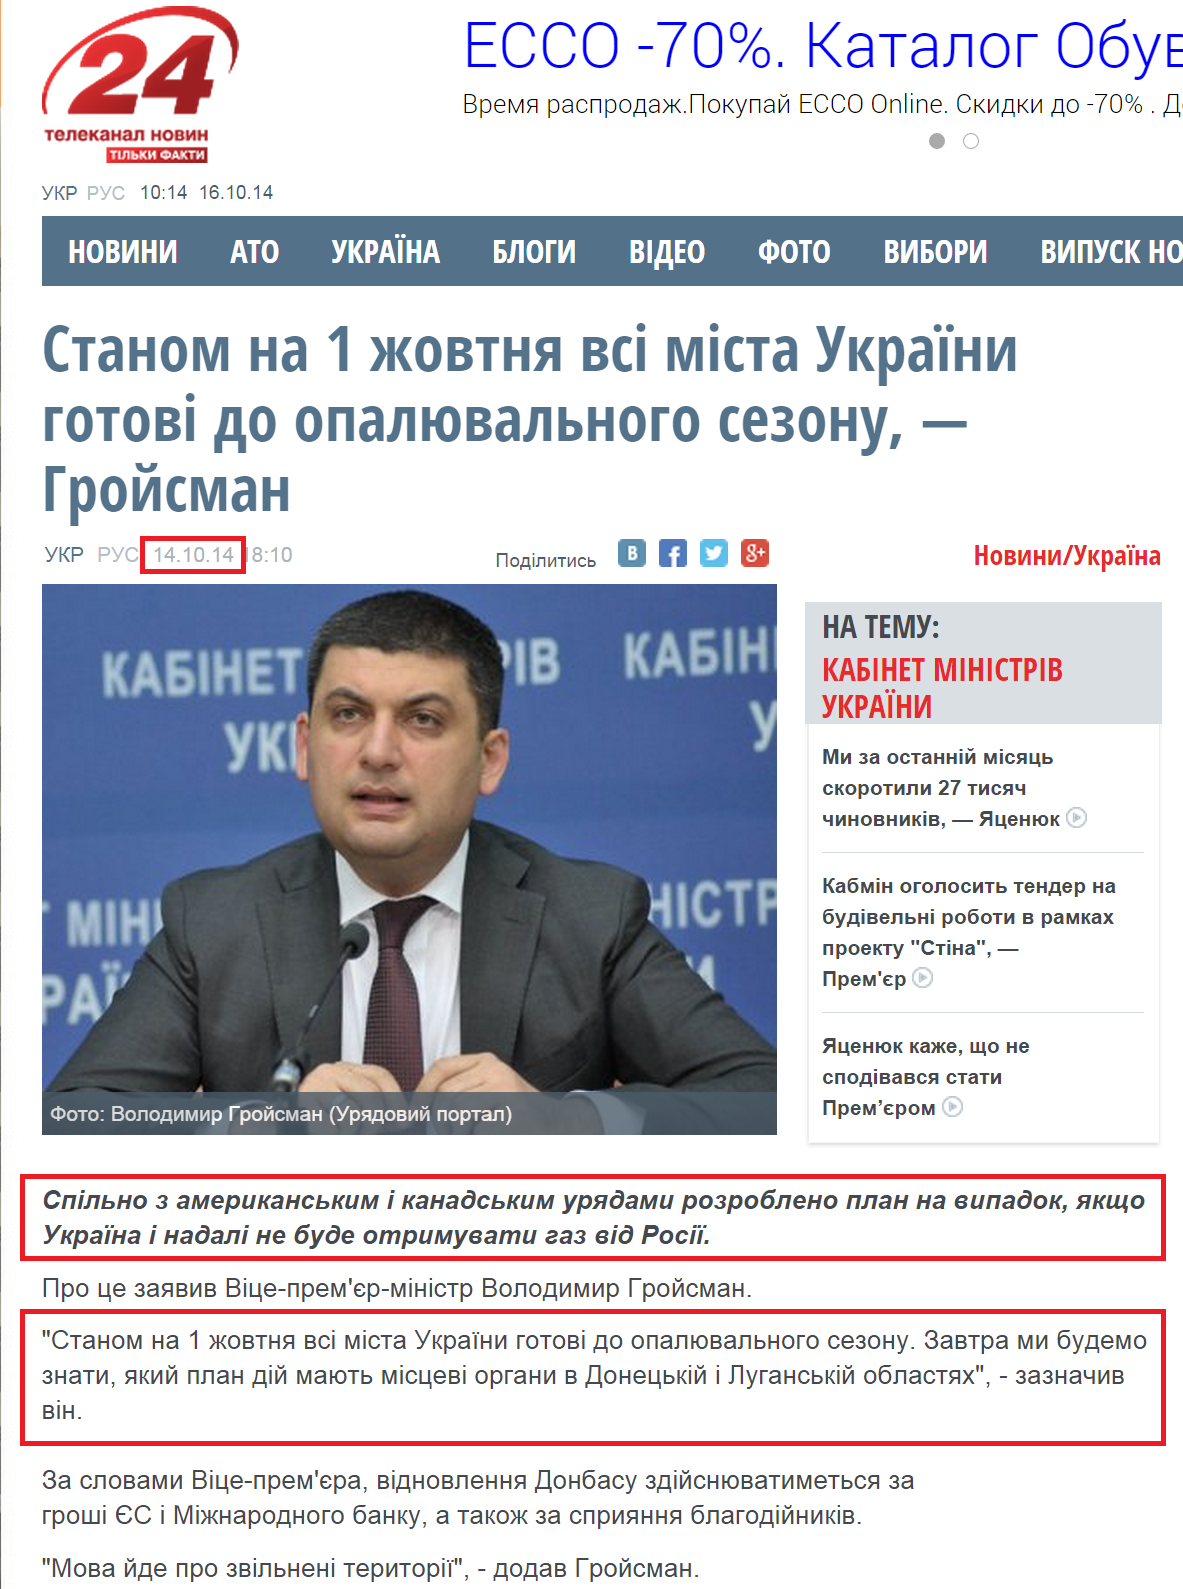 http://24tv.ua/home/showSingleNews.do?stanom_na_1_zhovtnya_vsi_mista_ukrayini_gotovi_do_opalyuvalnogo_sezonu__groysman&objectId=496457